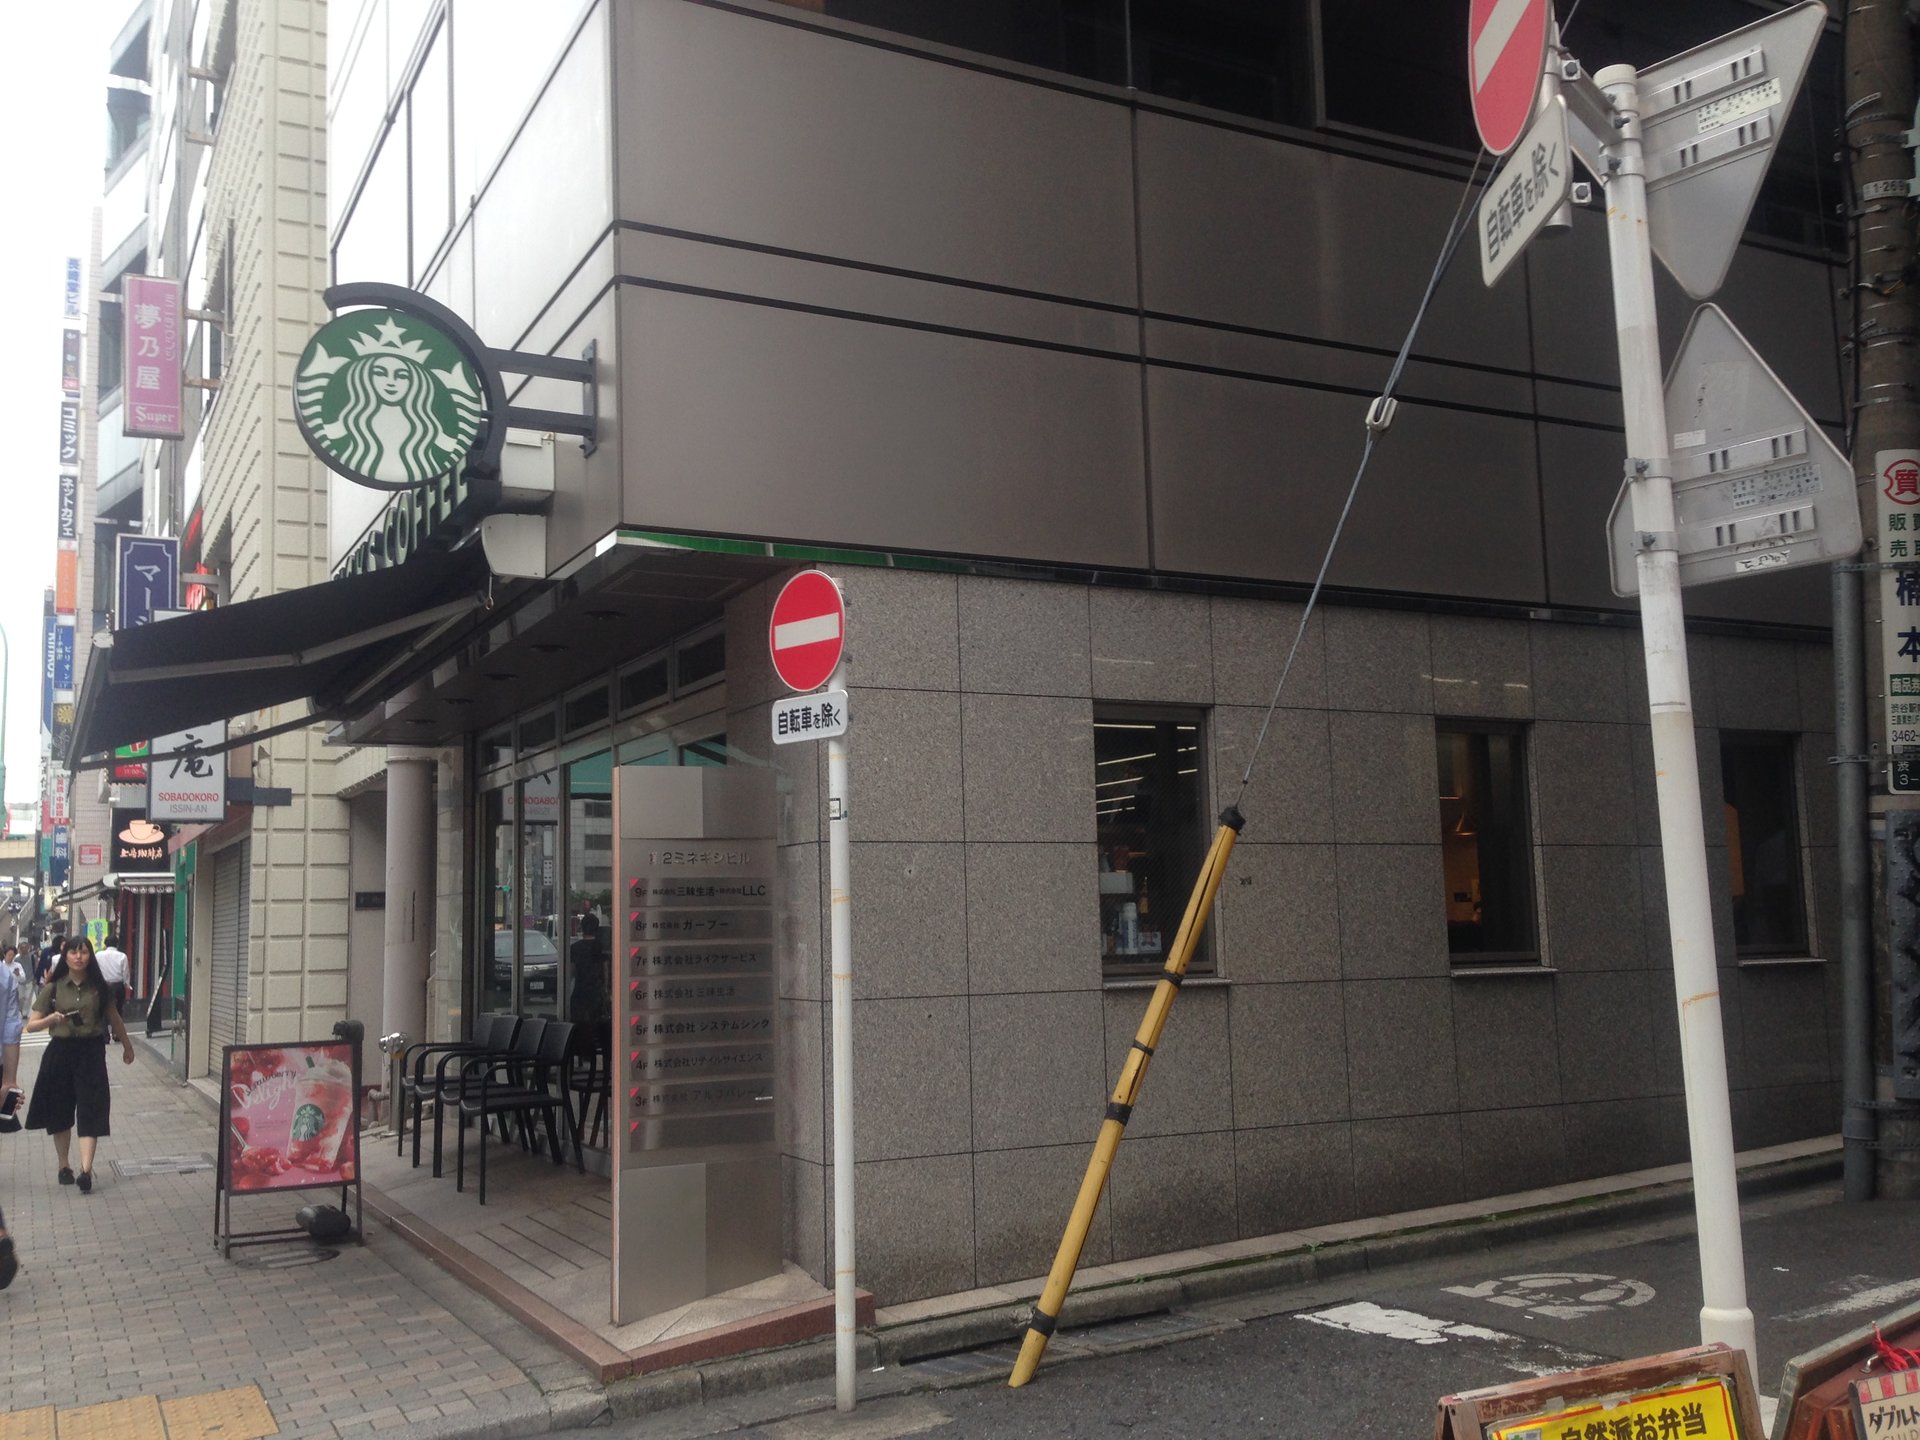 スターバックス・コーヒー 渋谷3丁目店